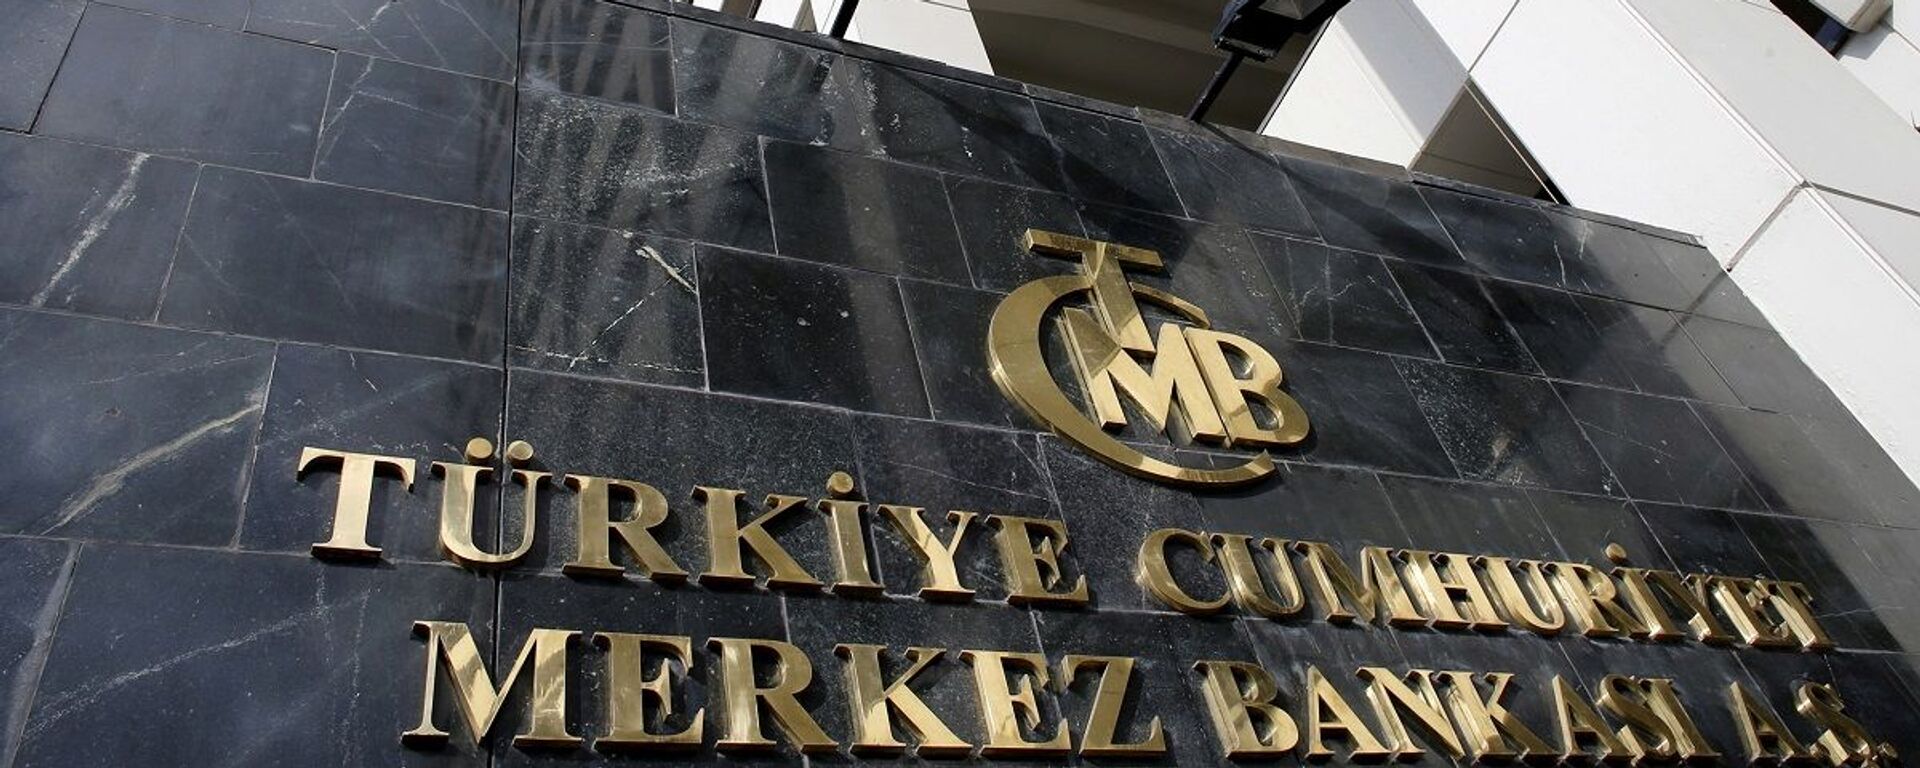 Merkez Bankası - Sputnik Türkiye, 1920, 22.11.2021